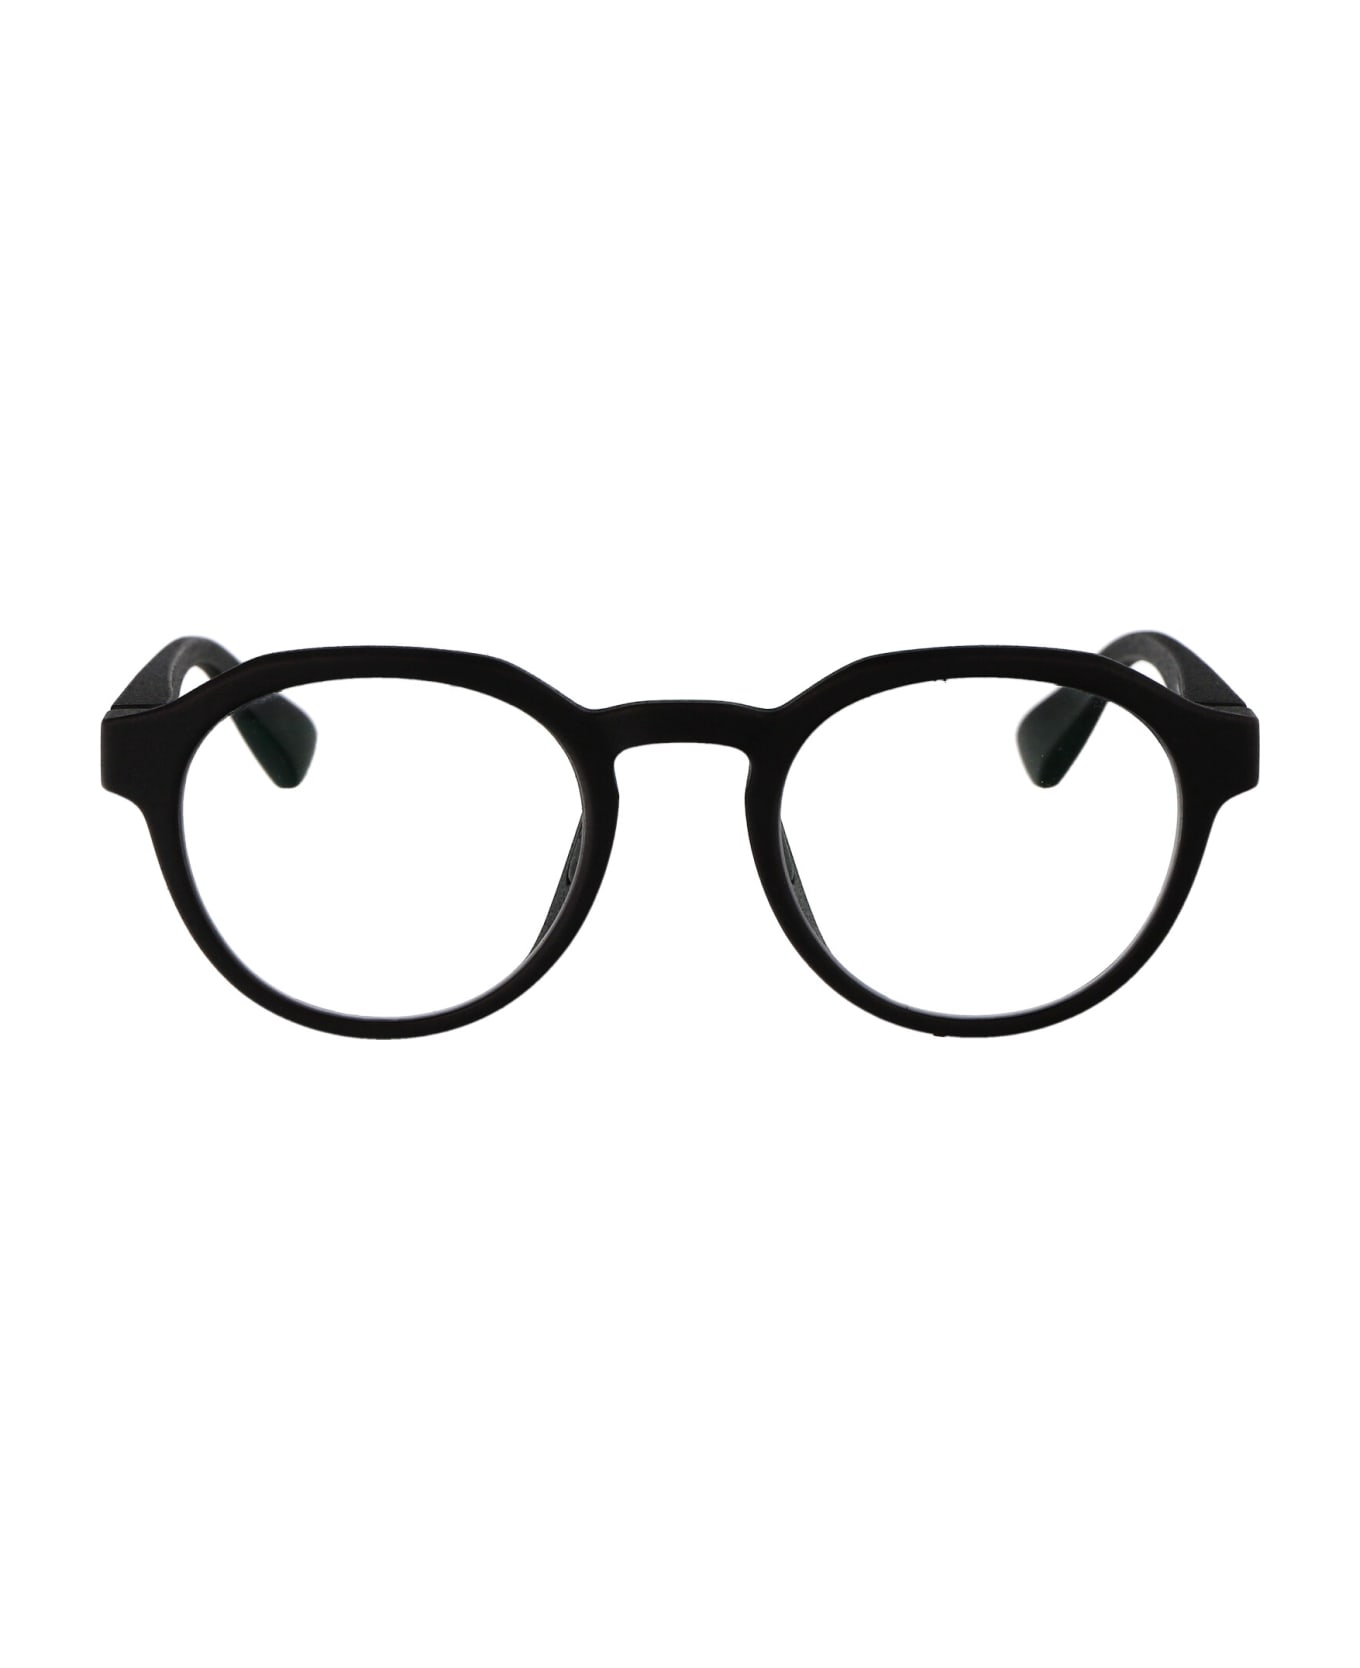 Mykita Jara Glasses - 354 MD1-Pitch Black Clear